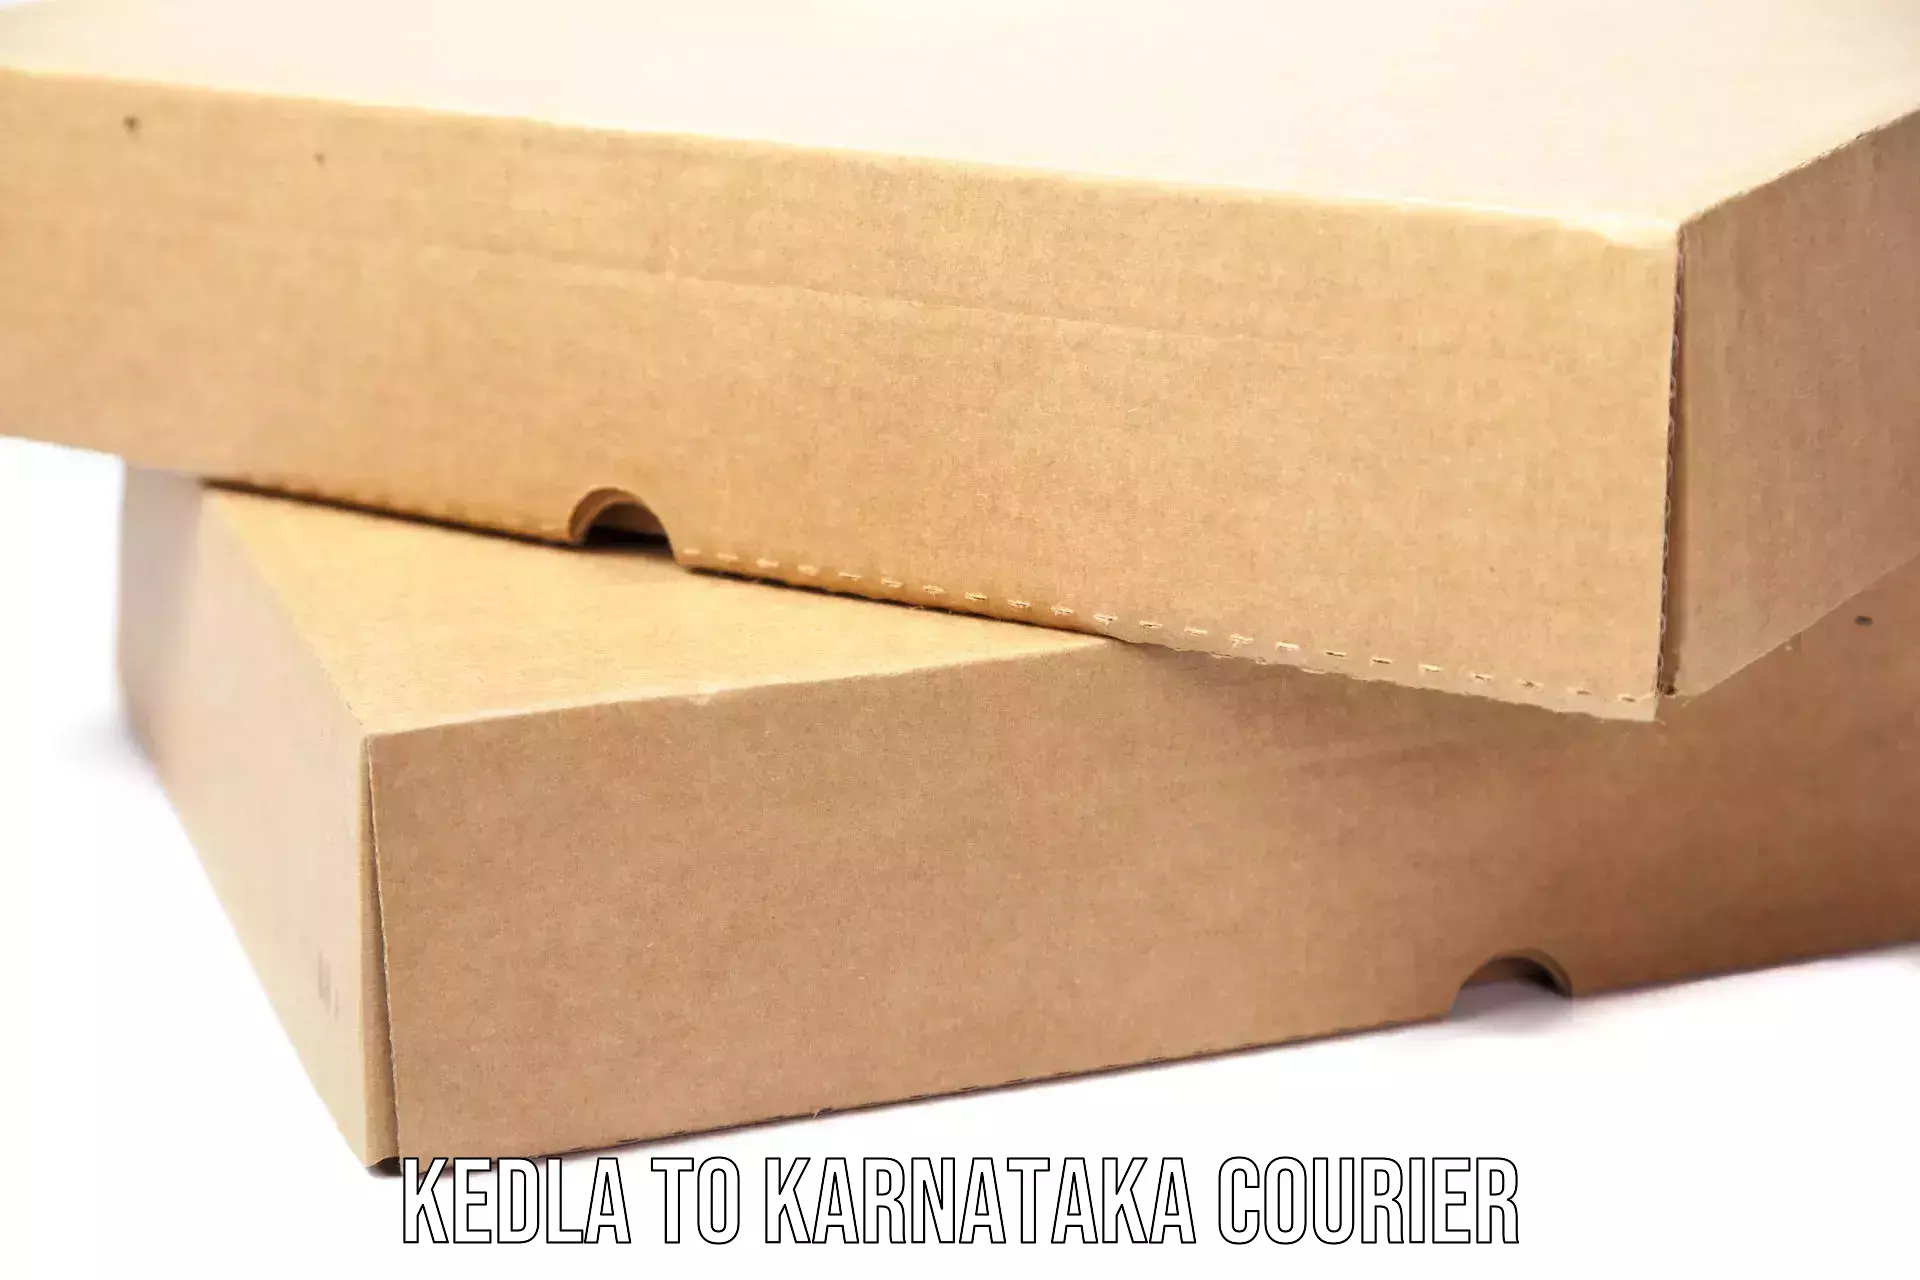 Expedited parcel delivery Kedla to Karnataka